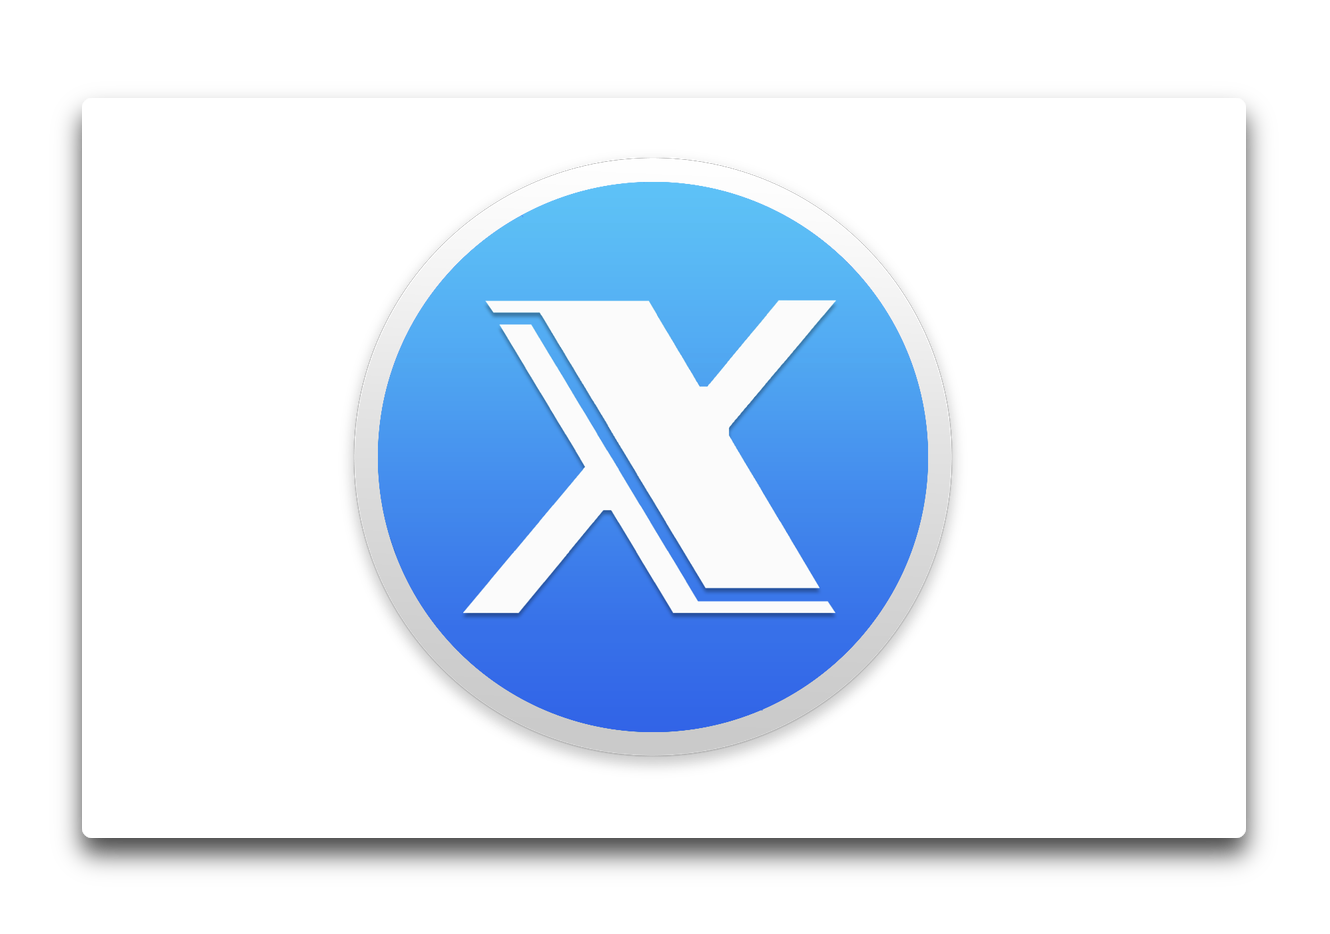 Titanium Softwareは、macOS Mojave 10.14をサポートした多機能ユーティリティ「OnyX 3.5」をリリース